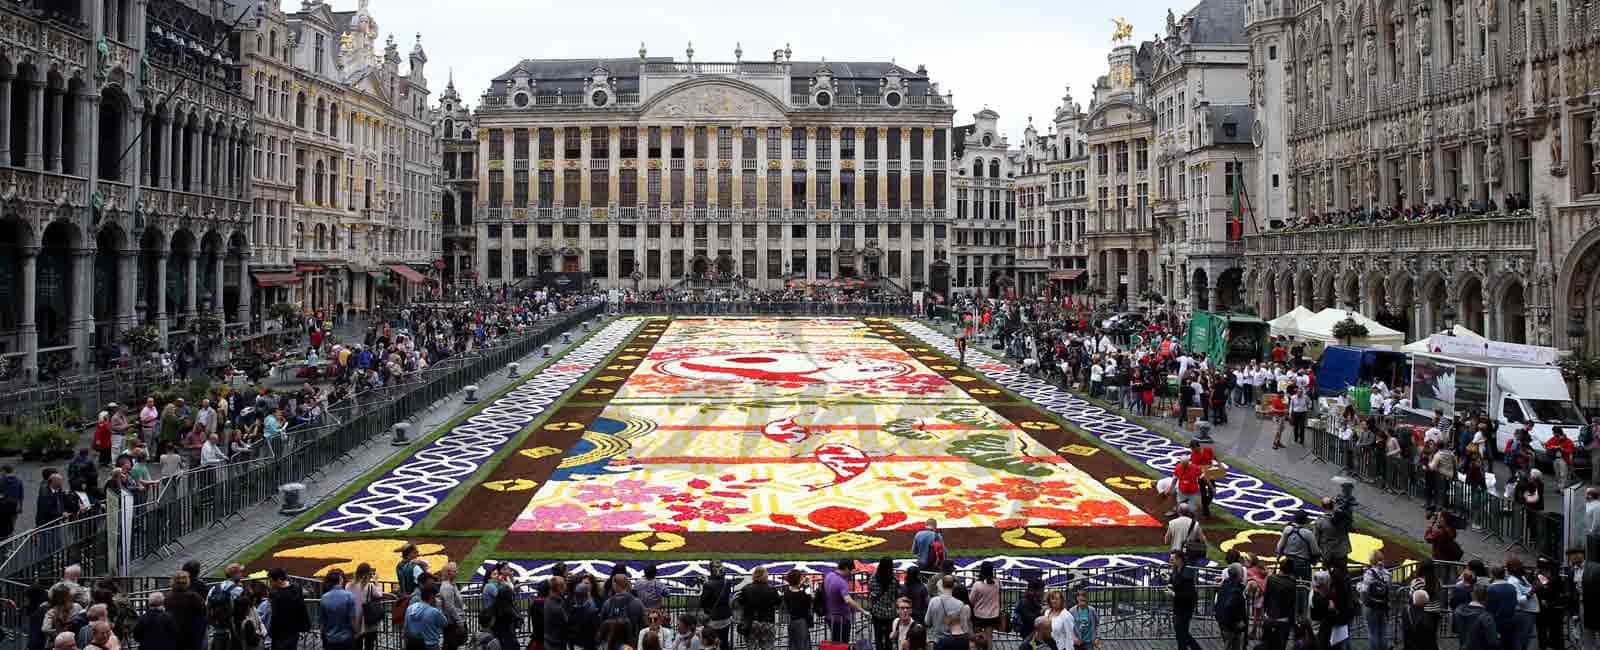 600.000 flores para crear una alfombra